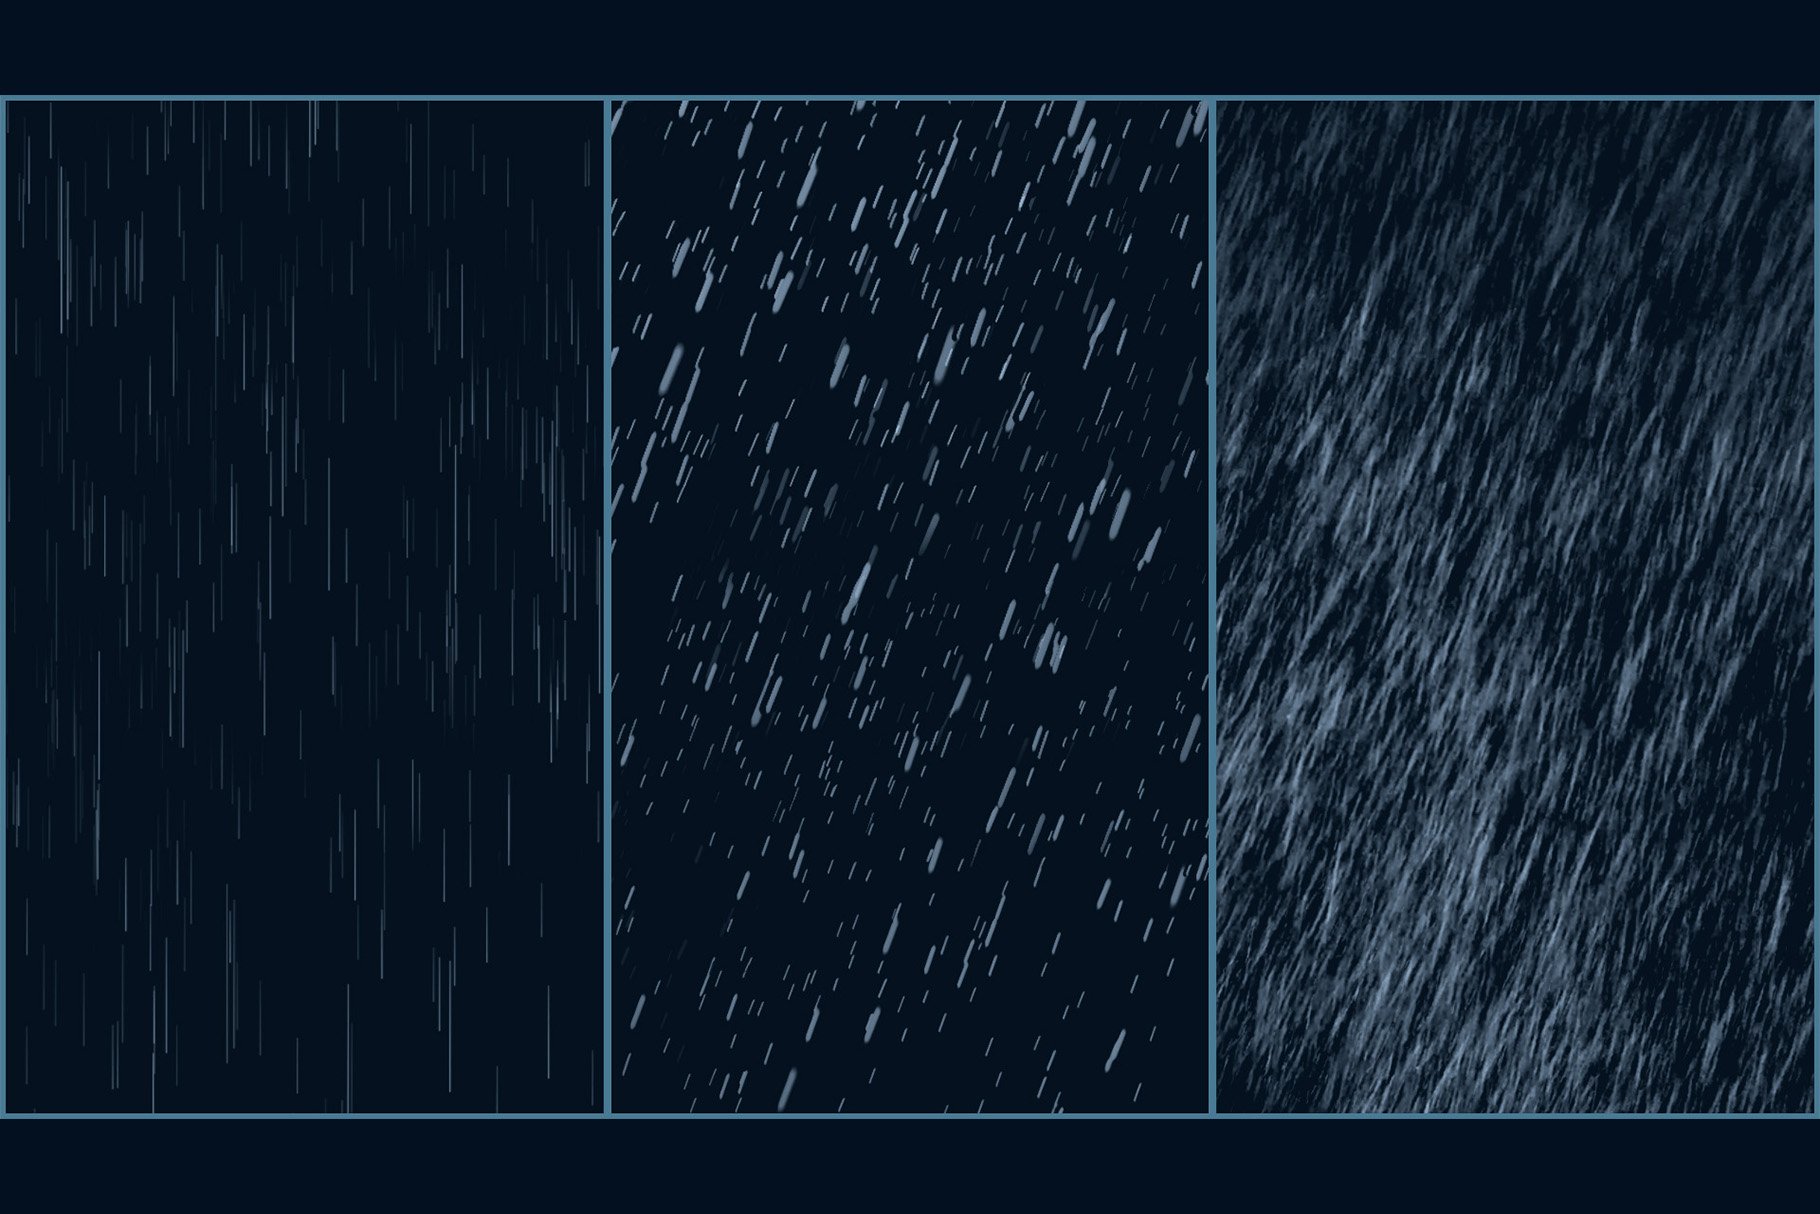 Rain brush setpreview image.